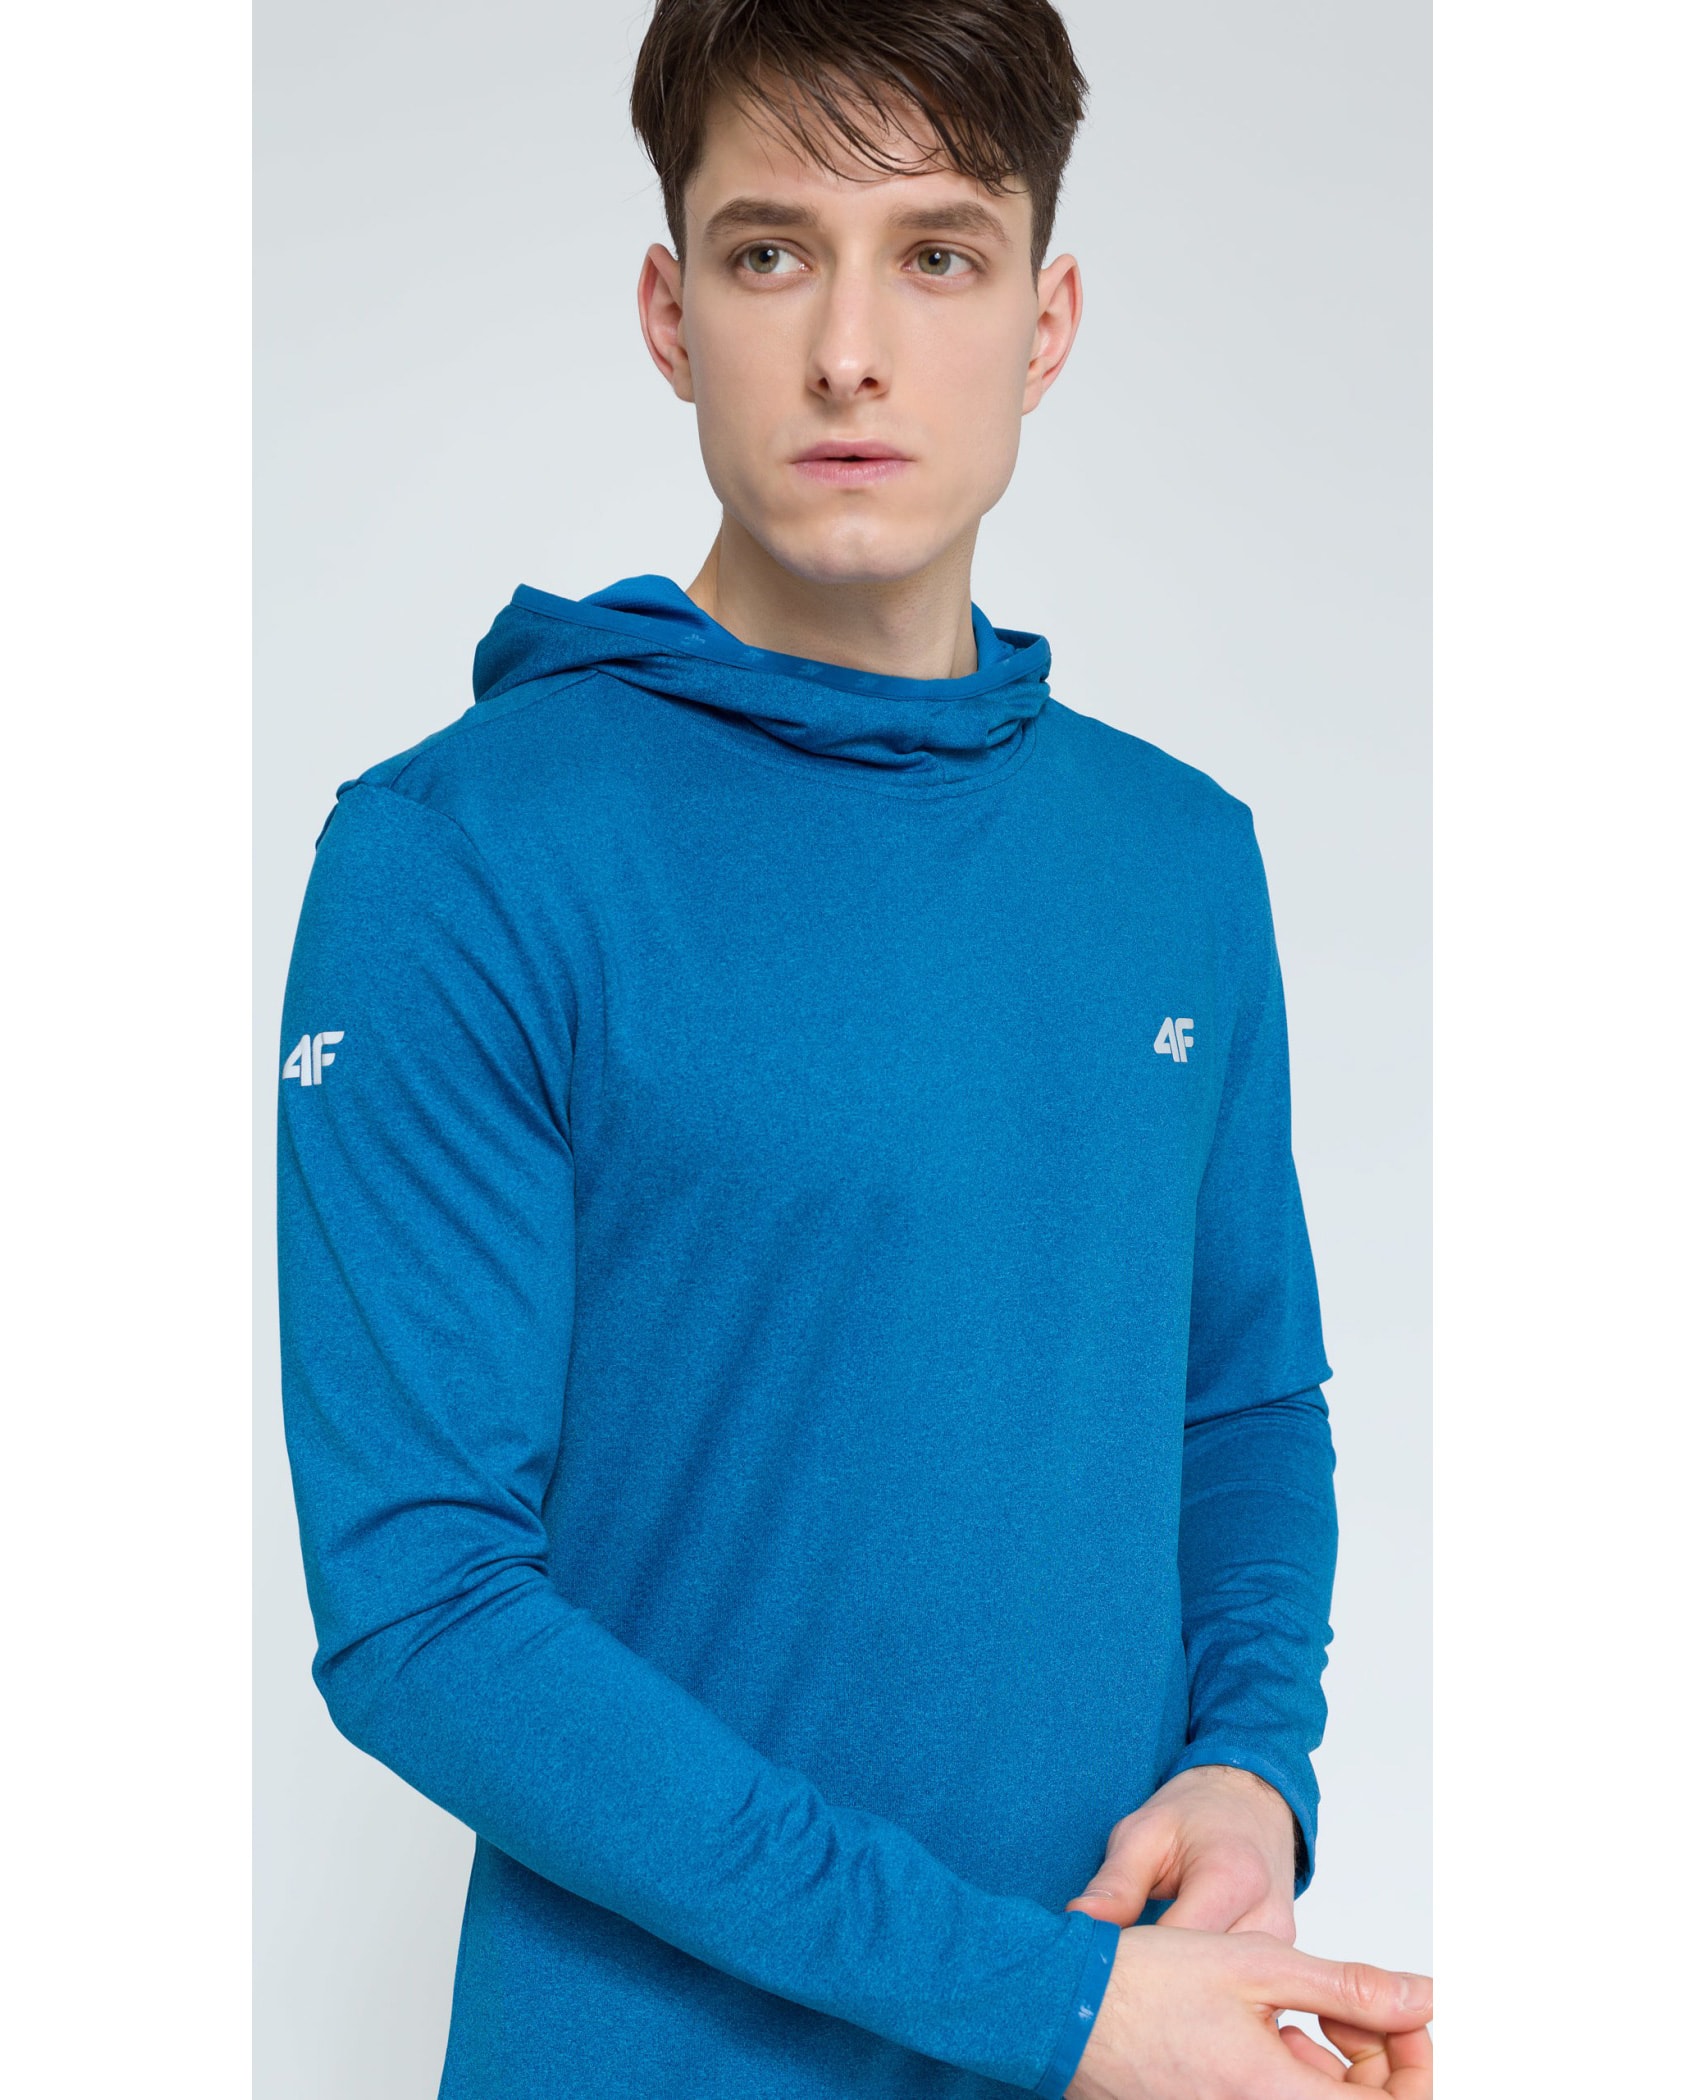 4F Men’s Functional Sweatshirt - Denim Melange